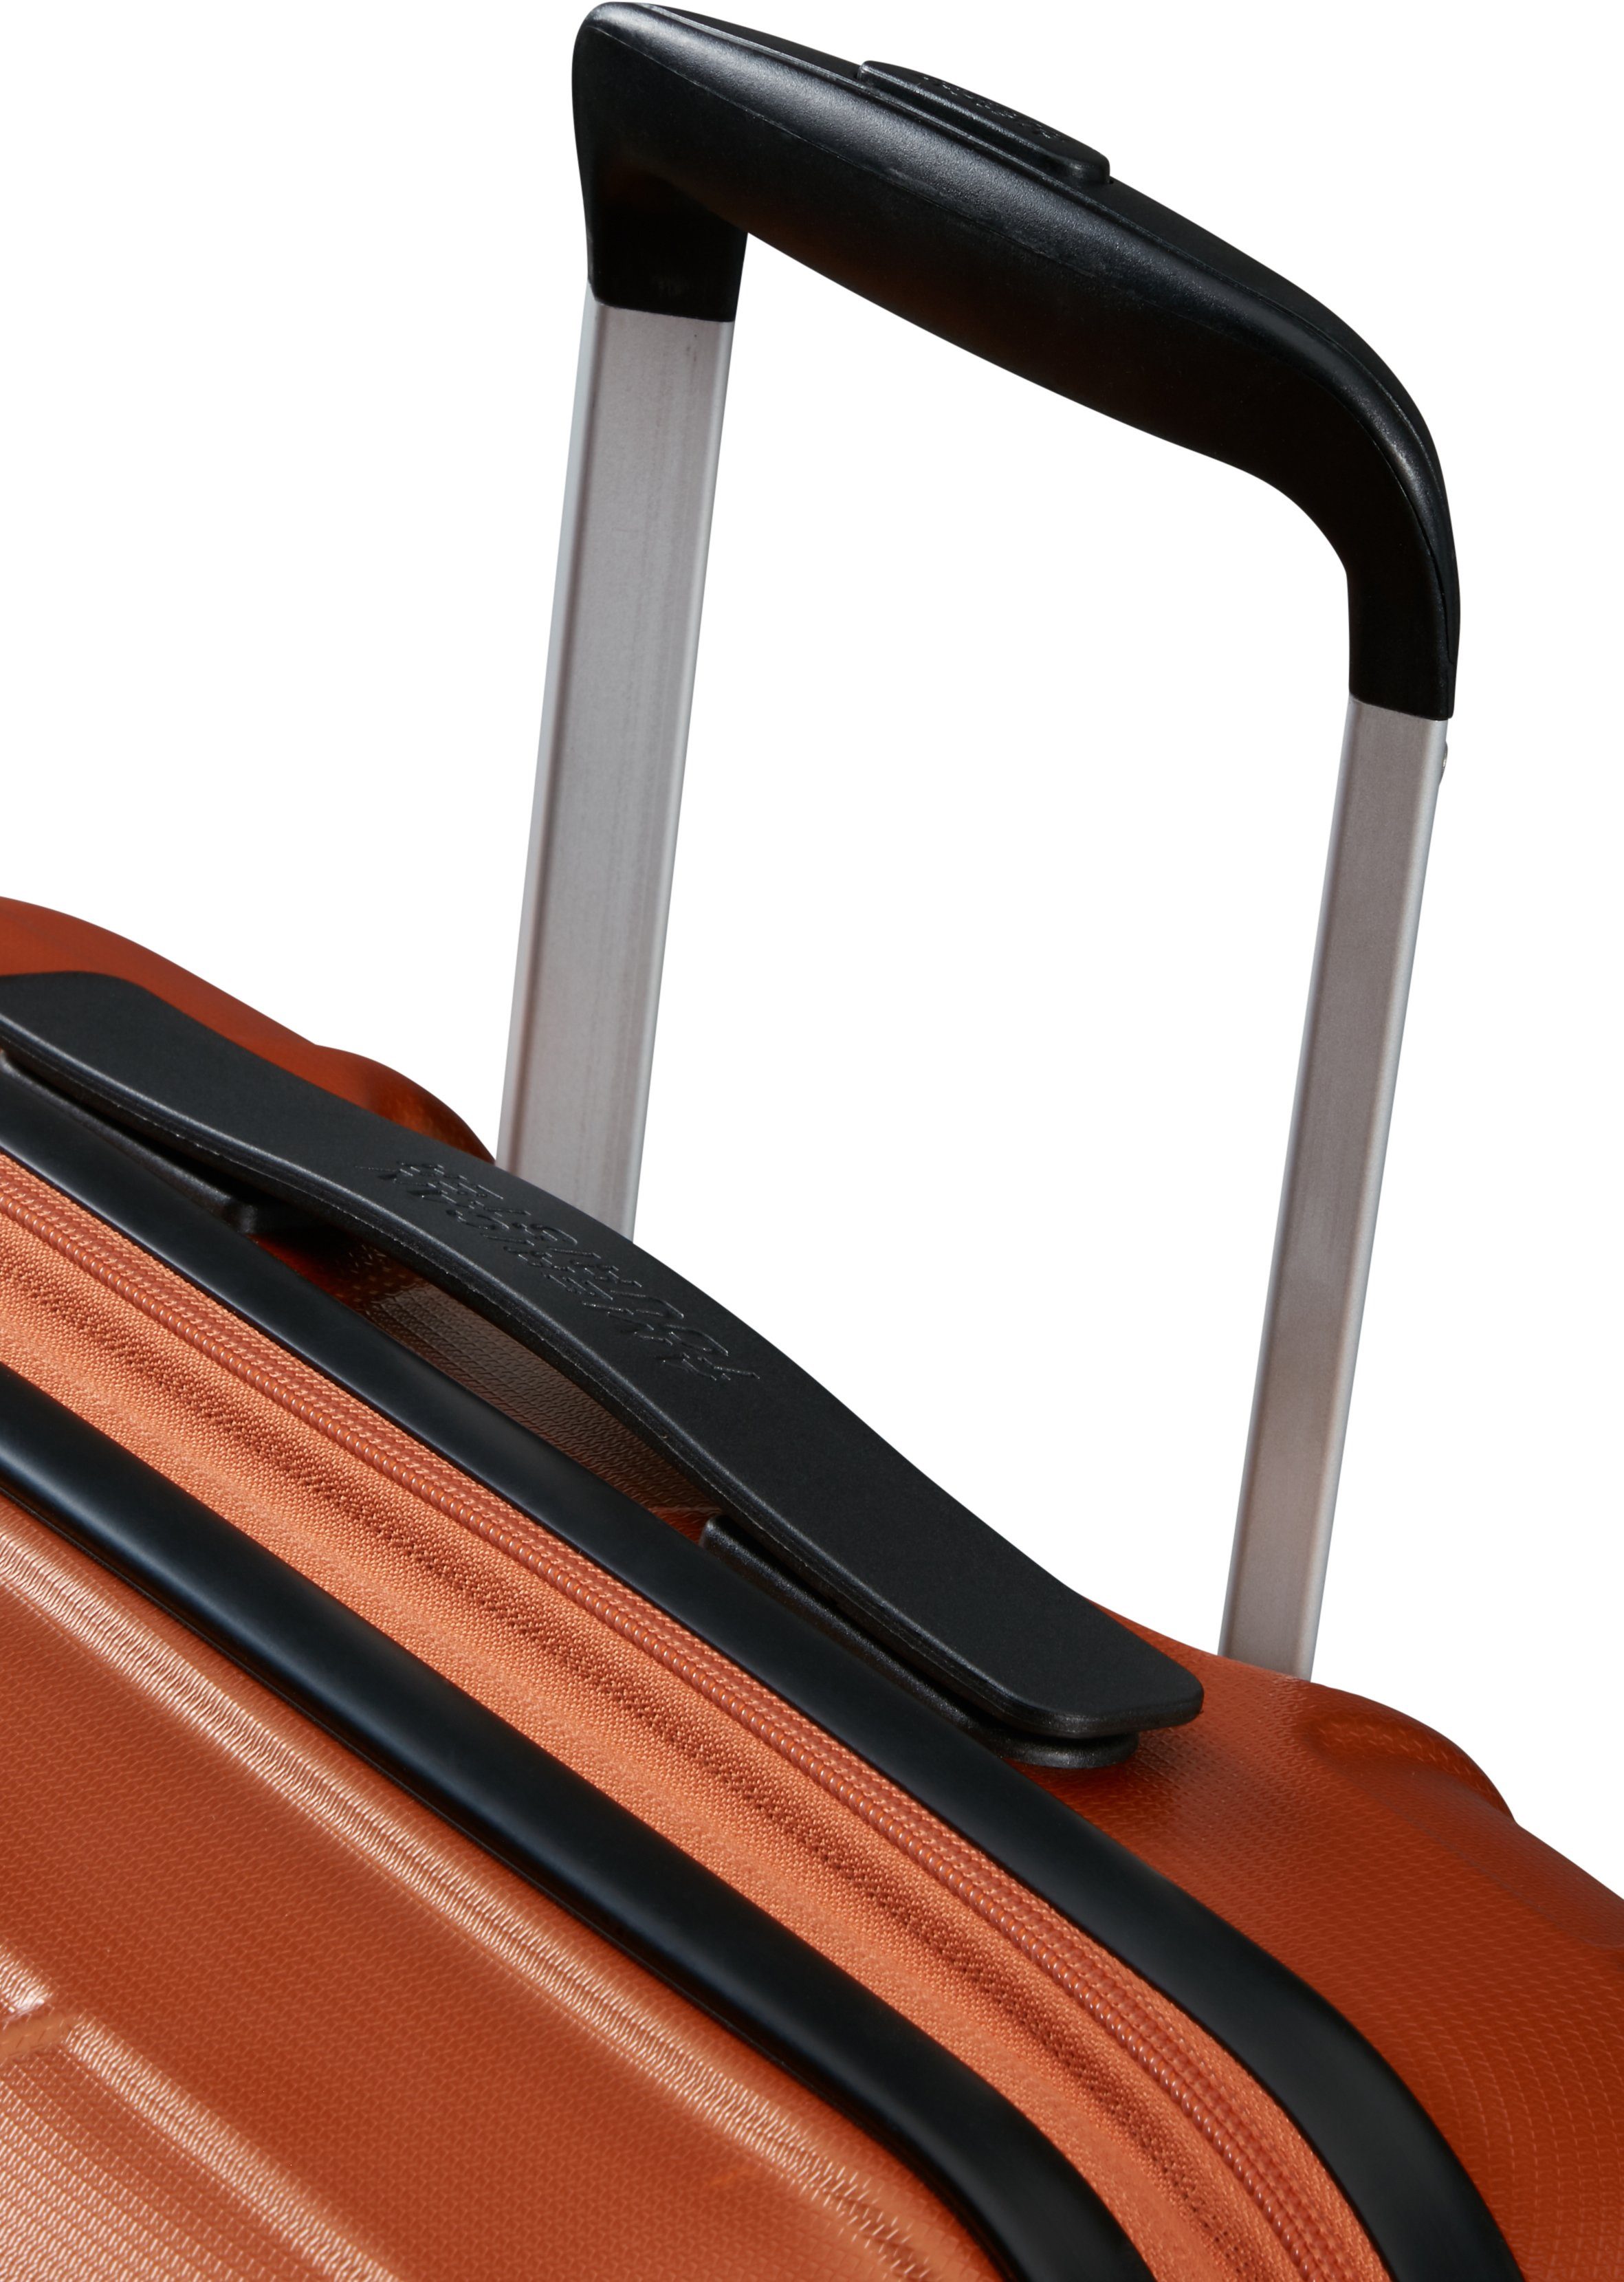 American Tourister® Hartschalen-Trolley Speedstar, cm, mit 4 Copper 67 Volumenerweiterung Rollen, Orange